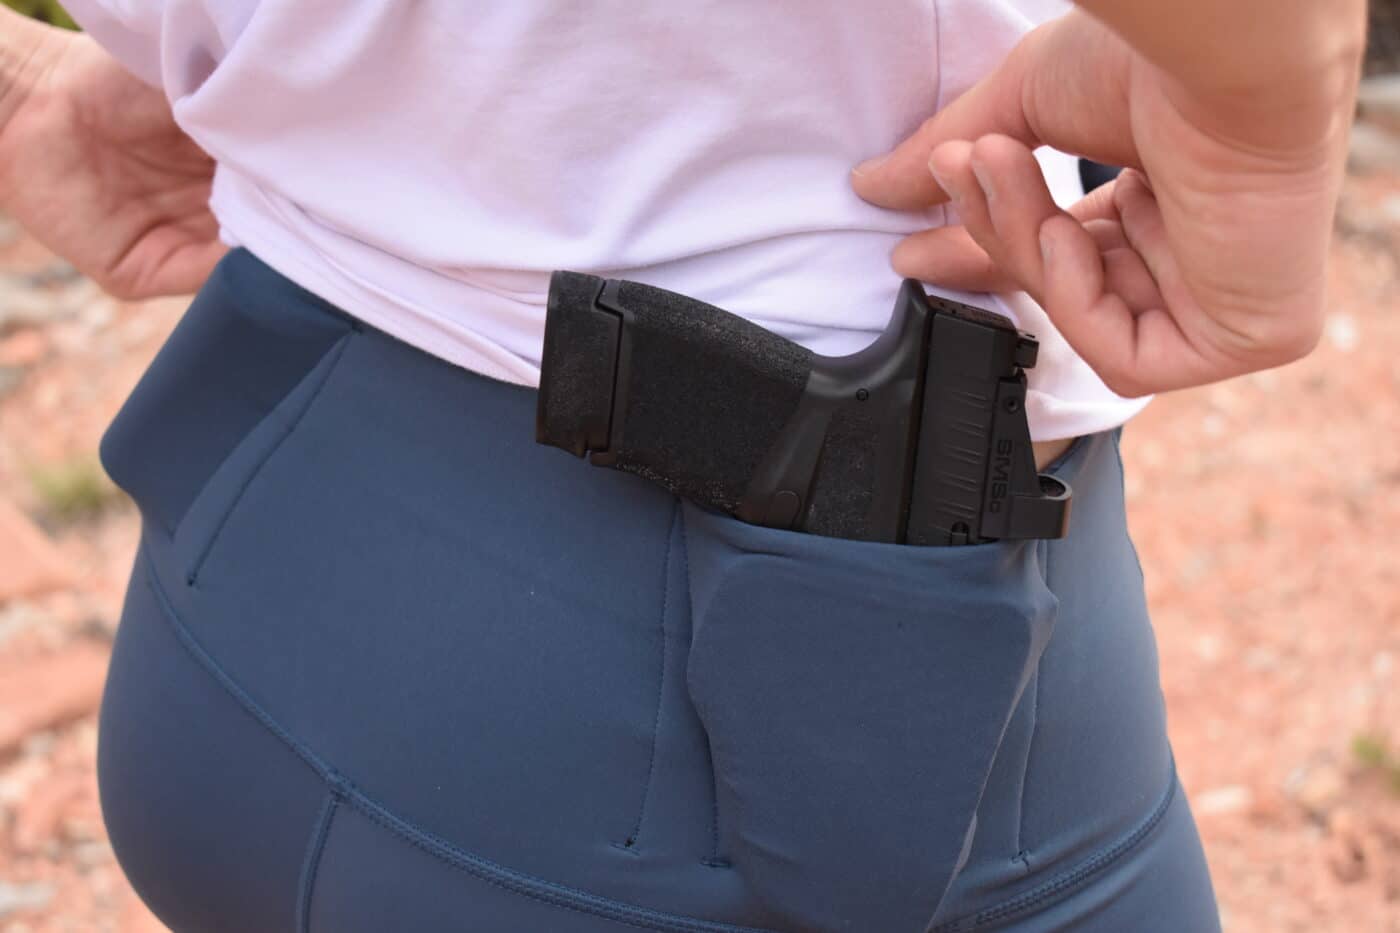 Hellcat pistol carried in women's leggings